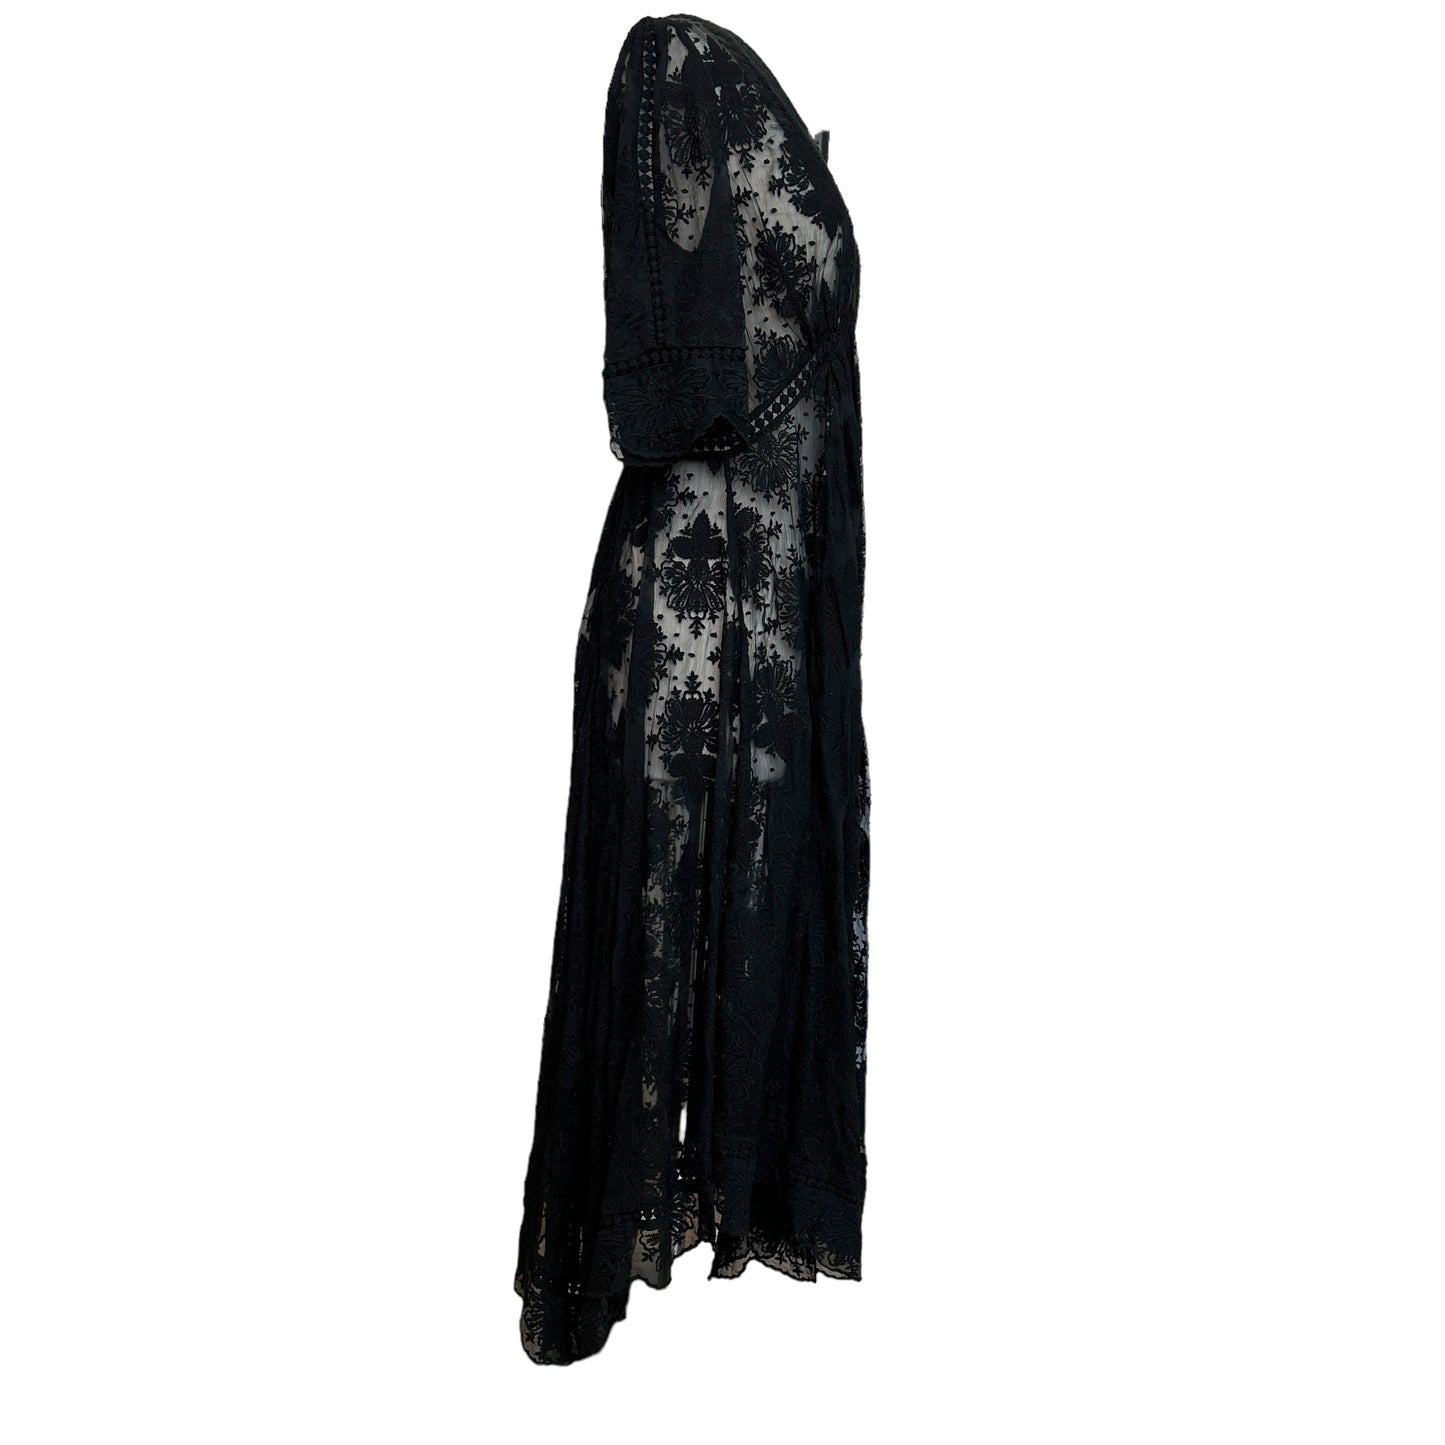 Black Lace Dress - S/M